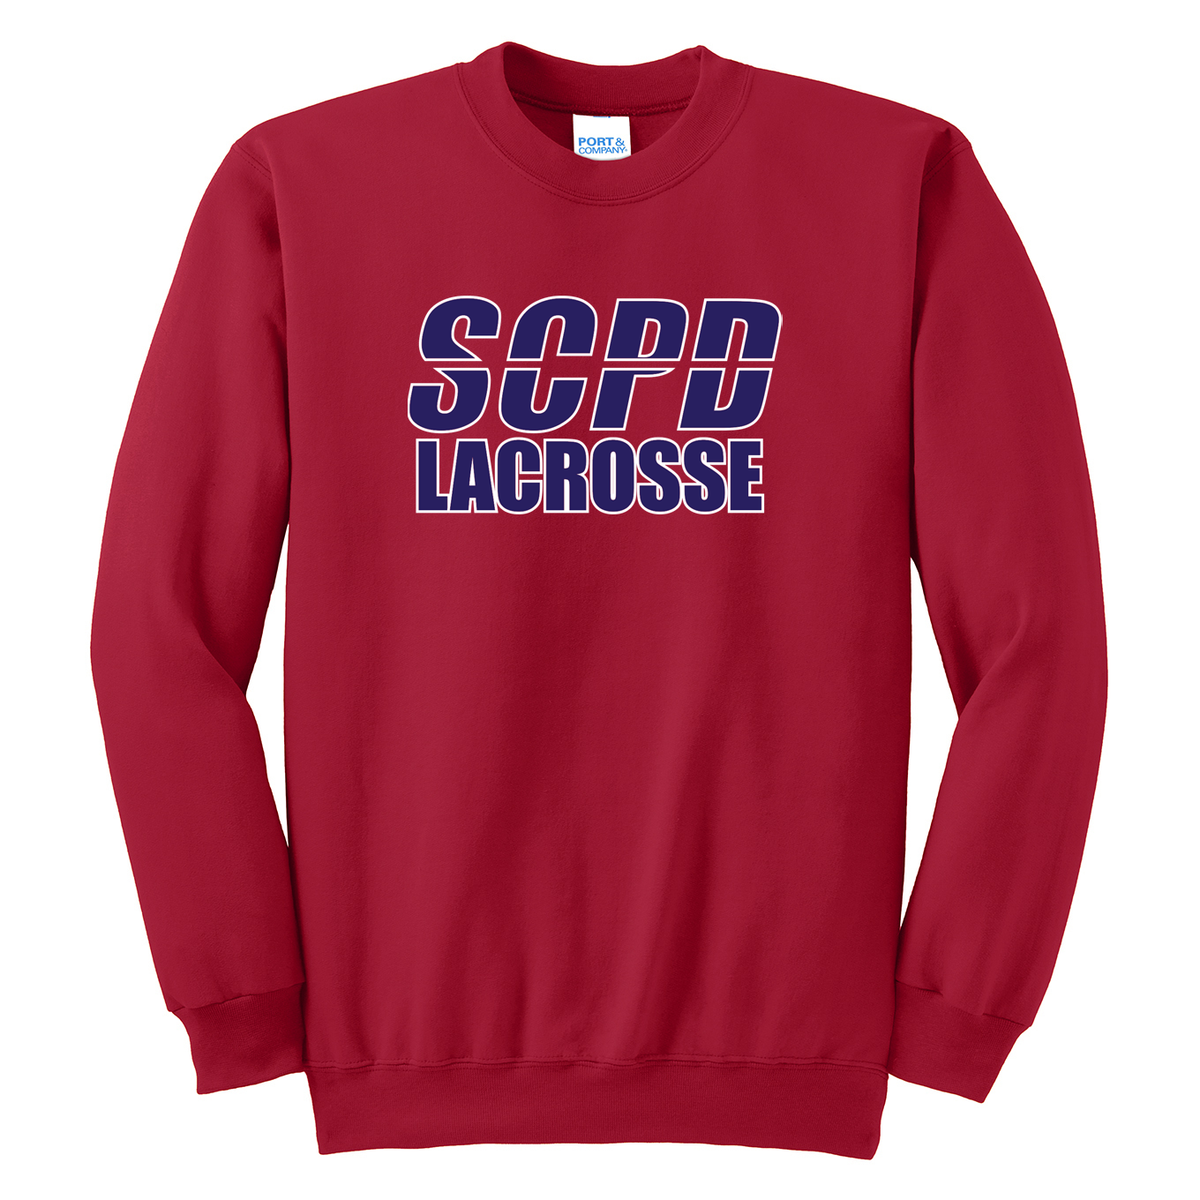 SCPD Lacrosse Crew Neck Sweater